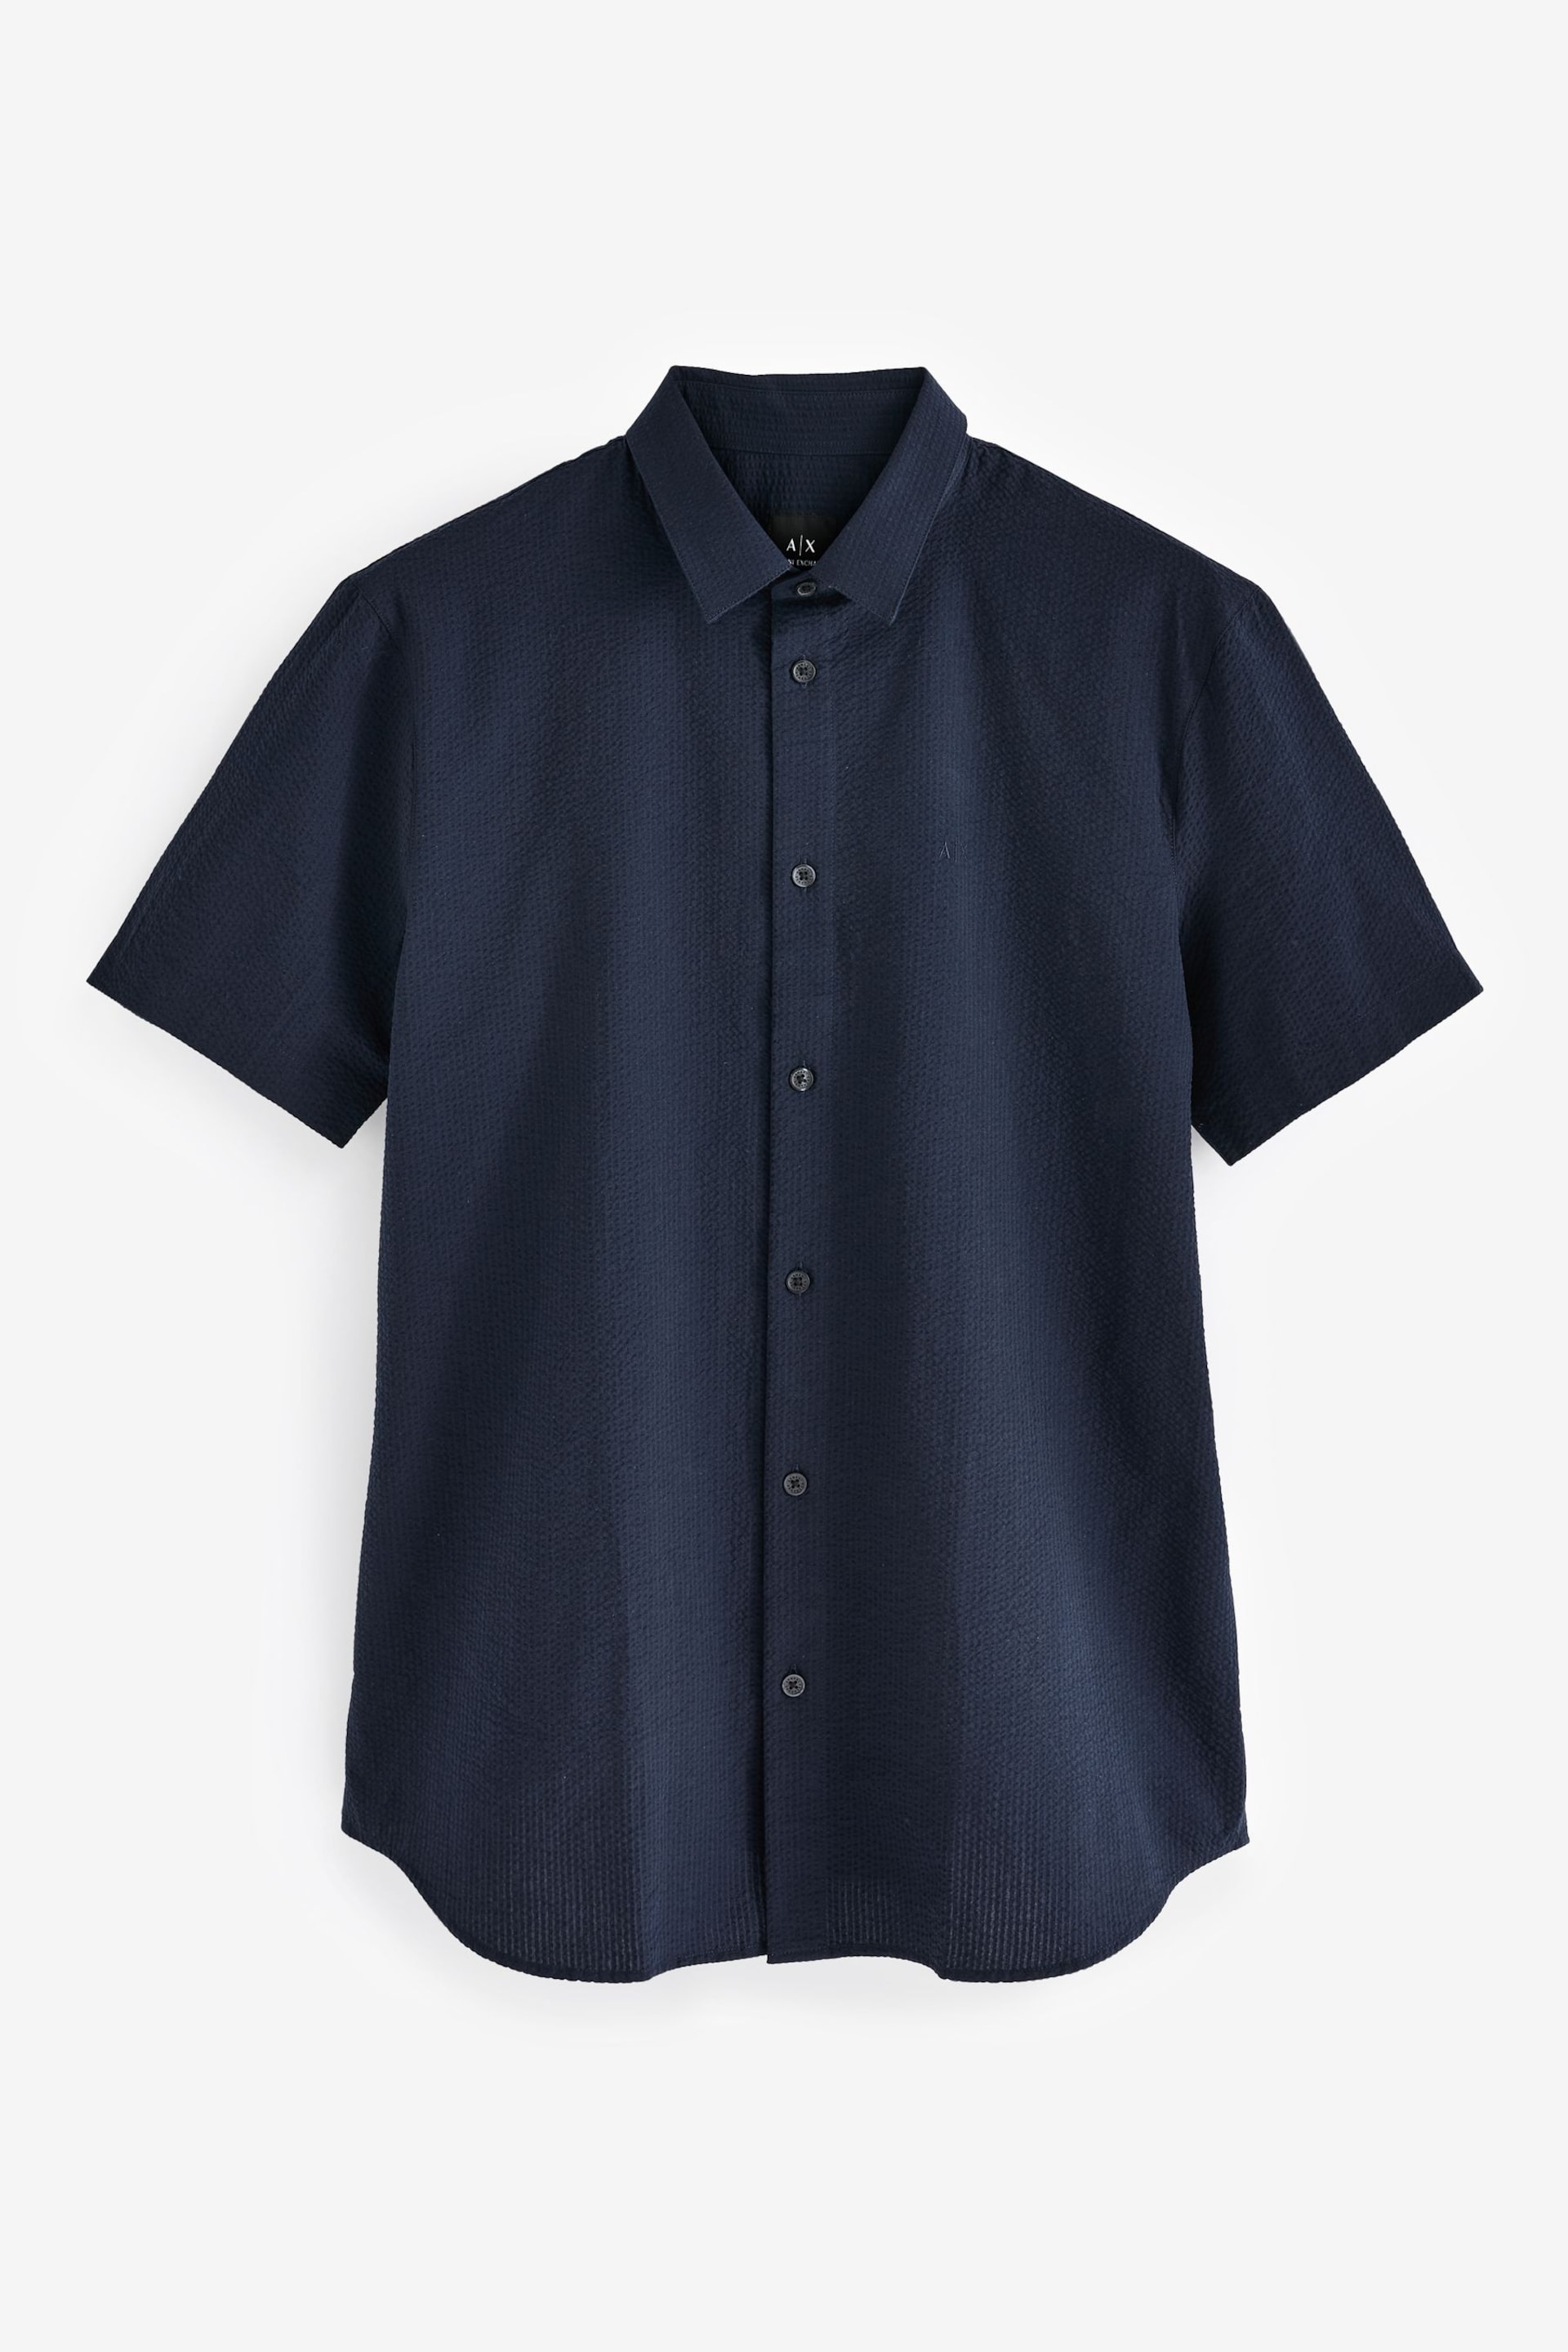 Armani Exchange Seersucker Texture Short Sleeve Shirt - Image 4 of 4